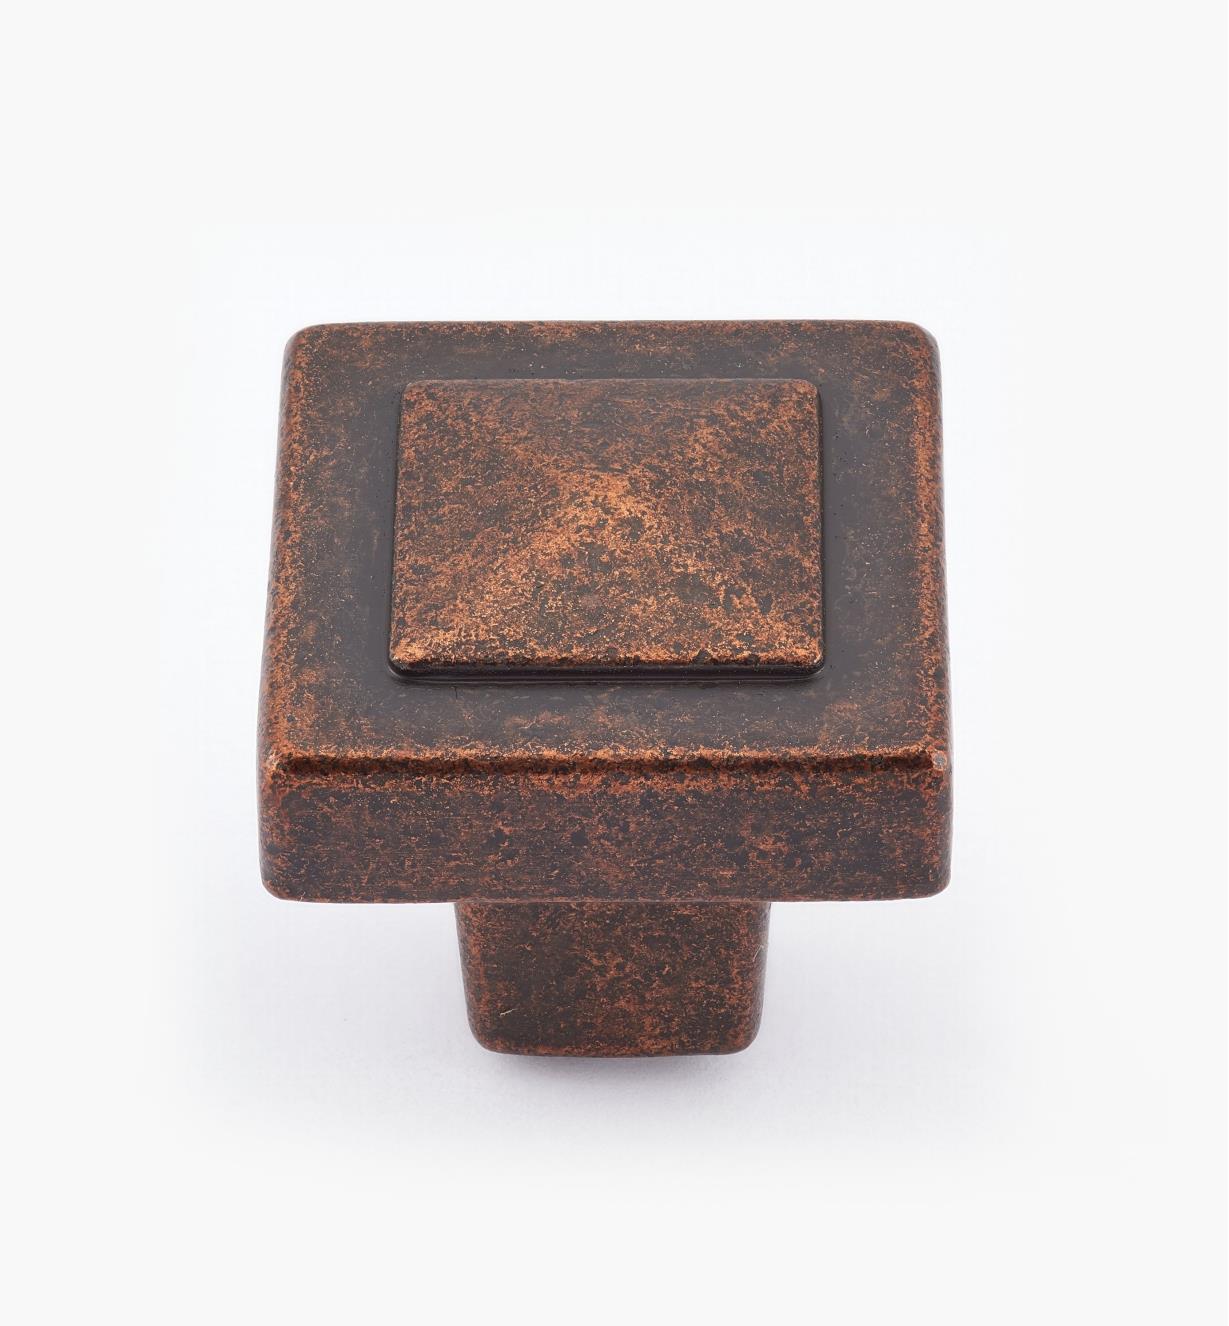 02A0976 - Bouton carré Forgings, fini bronze cuivré, 1 1/8 po x 1 po